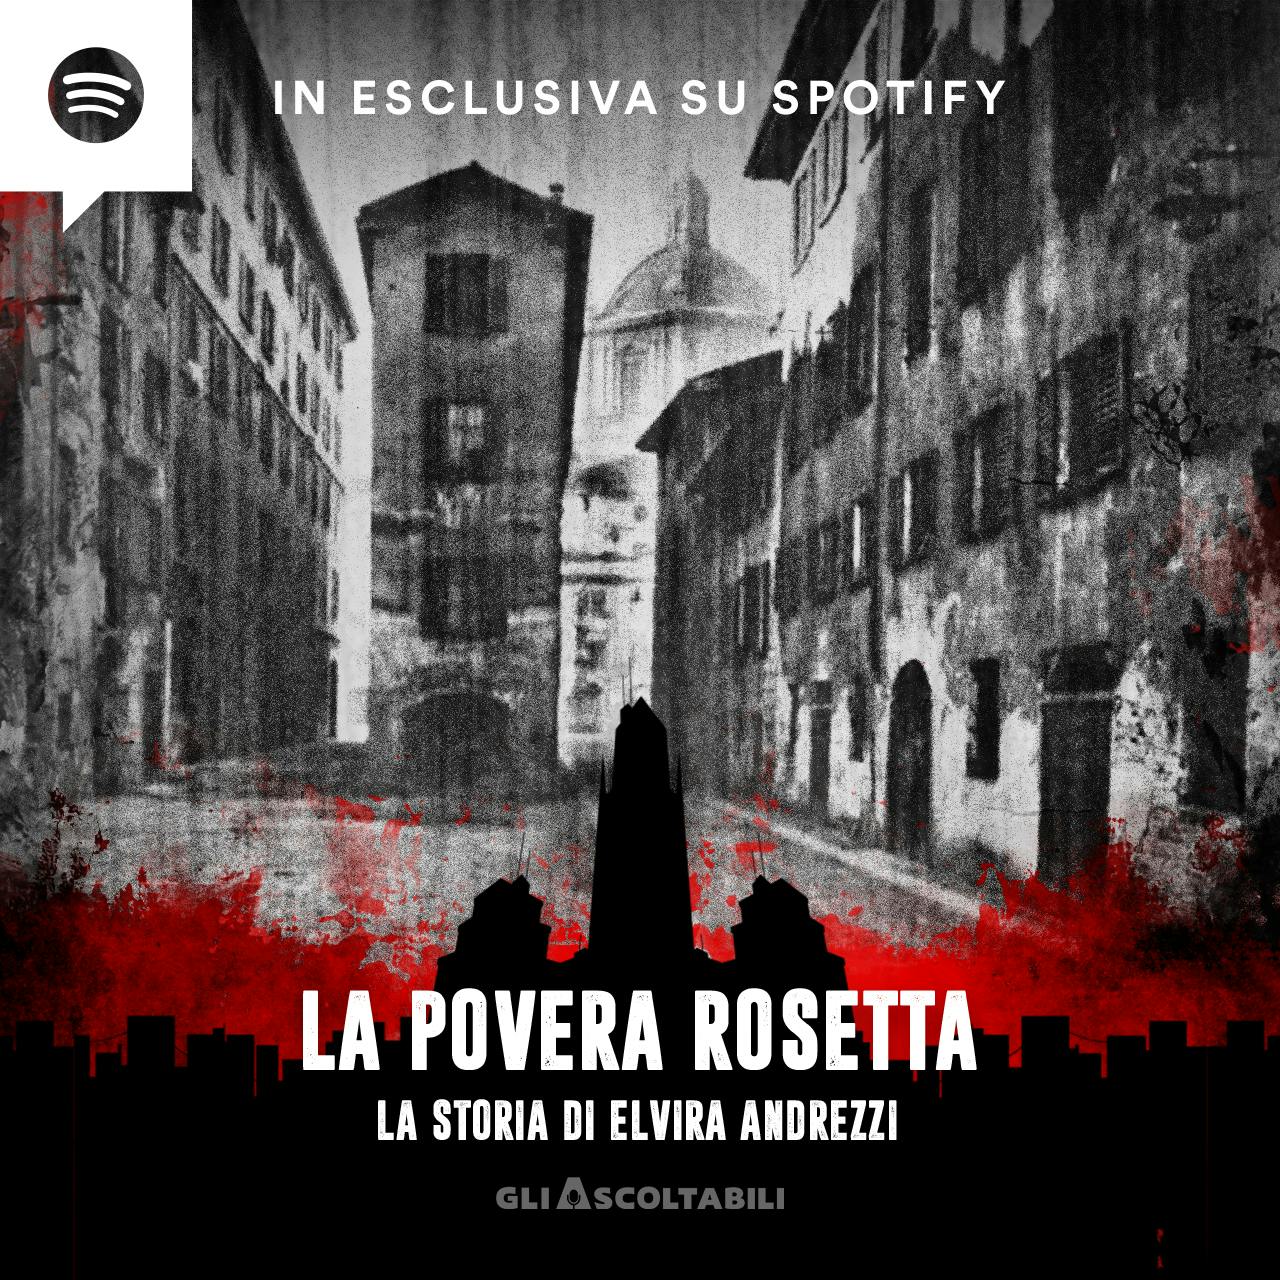 La povera Rosetta - La storia di Elvira Andrezzi